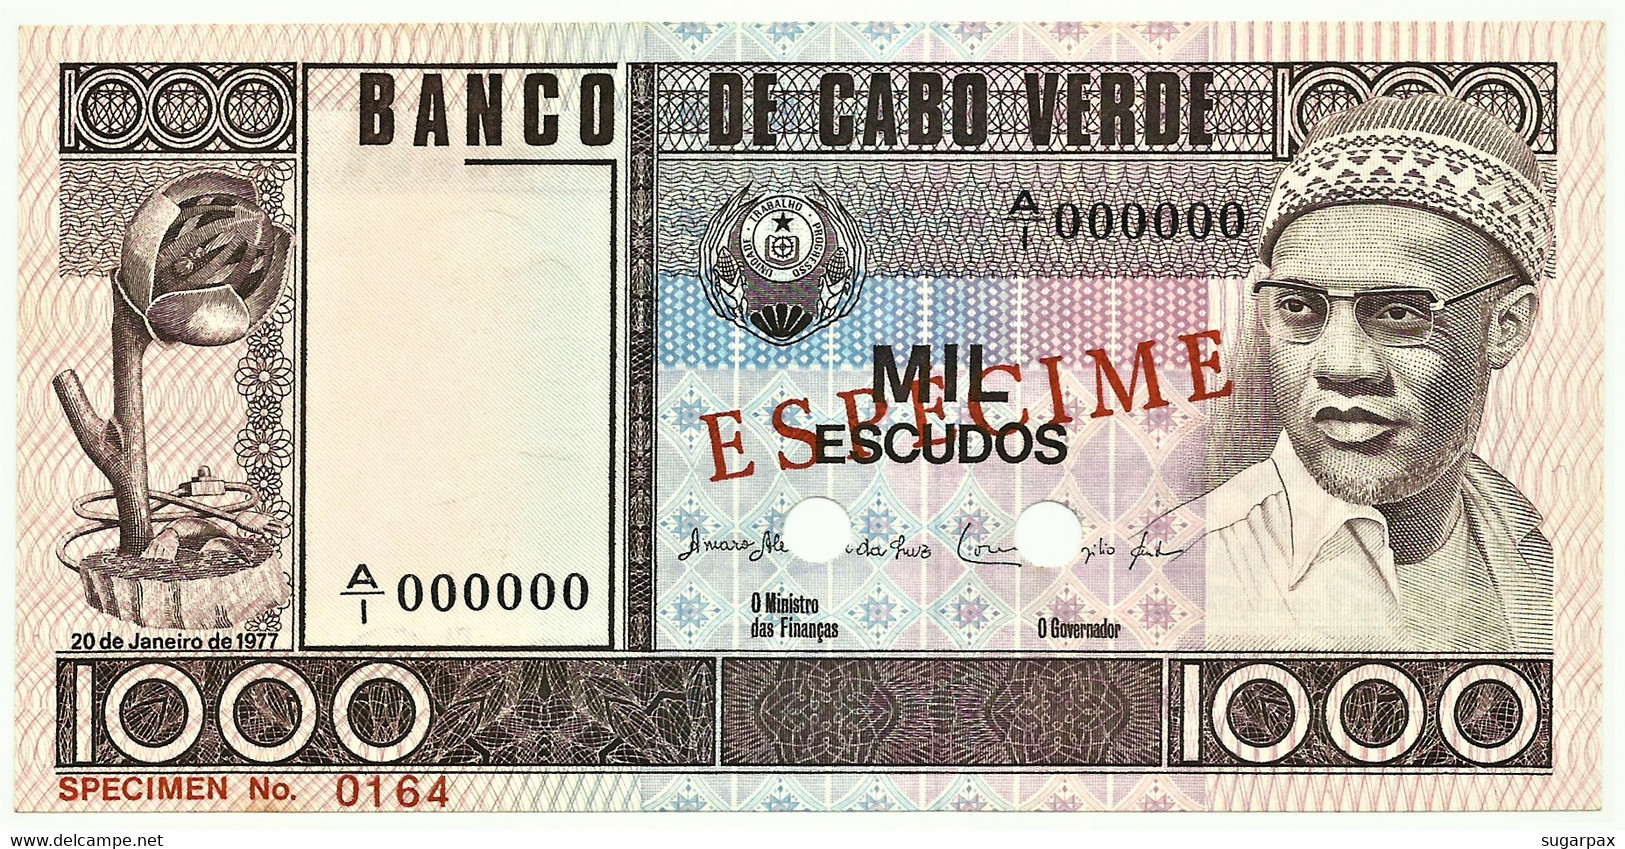 CAPE VERDE - 1000 ESCUDOS - 20.01.1977 - Pick 56.s1 - Unc. - ESPÉCIME In RED - 1.000 - Cap Vert